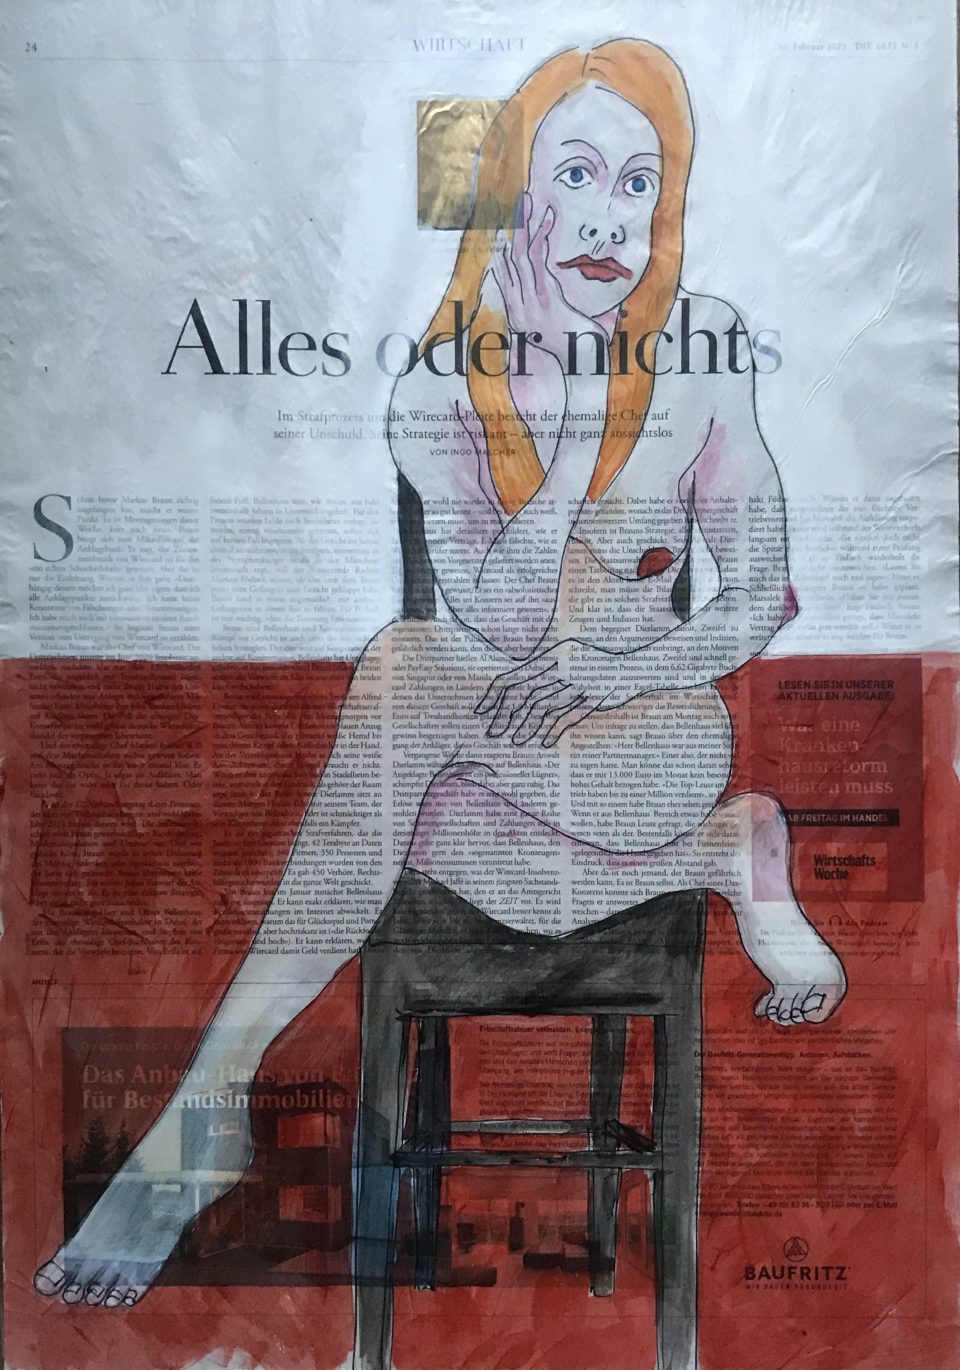 Alles oder nichts – auf Stuhl sitzender weiblicher Akt, rechte Hand stützt Kopf mit leerem Blick, auf ganzer Zeitungsseite 56 x 40 cm mit Überschrift "Alles oder nichts"